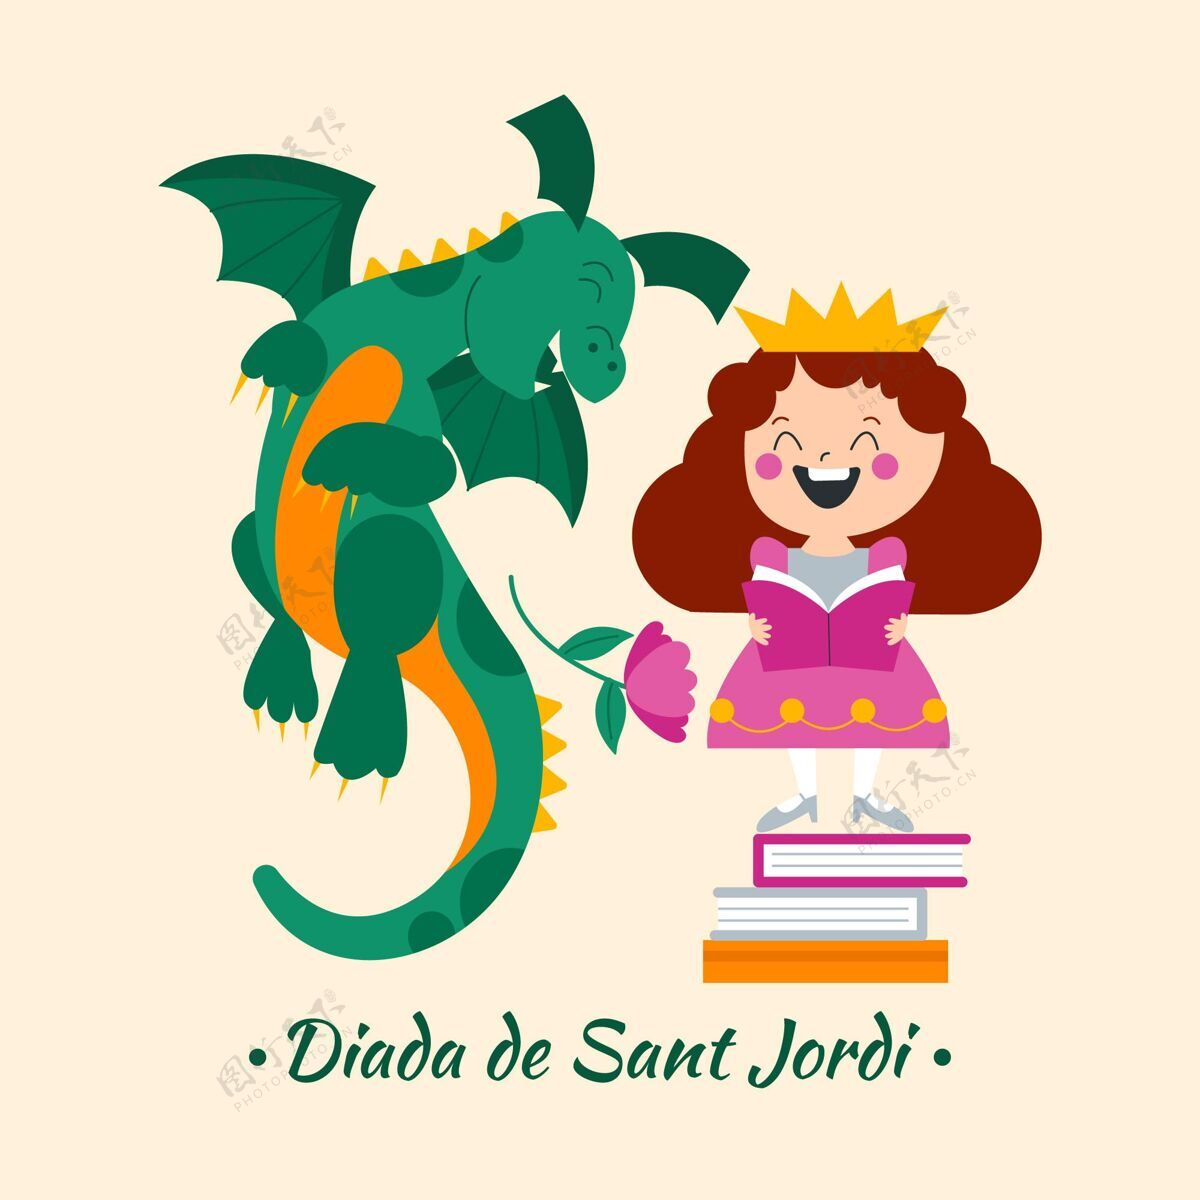 场合平面迪亚达圣约第插图与龙和公主平面设计西班牙传统